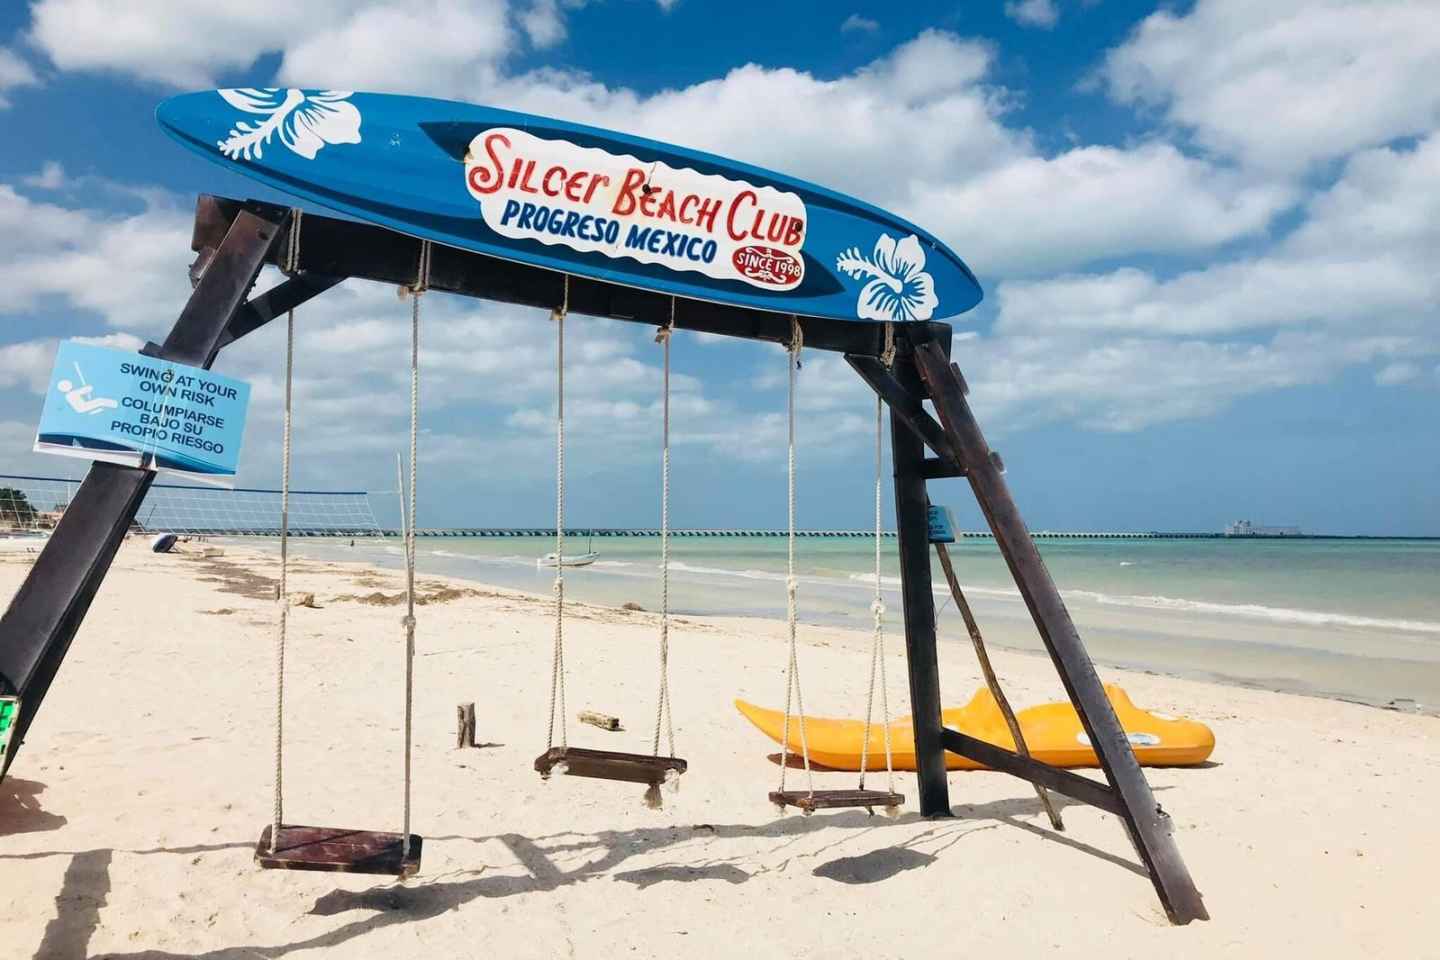 Progreso: Silcer Beach Club Zugang mit All-Inclusive Option